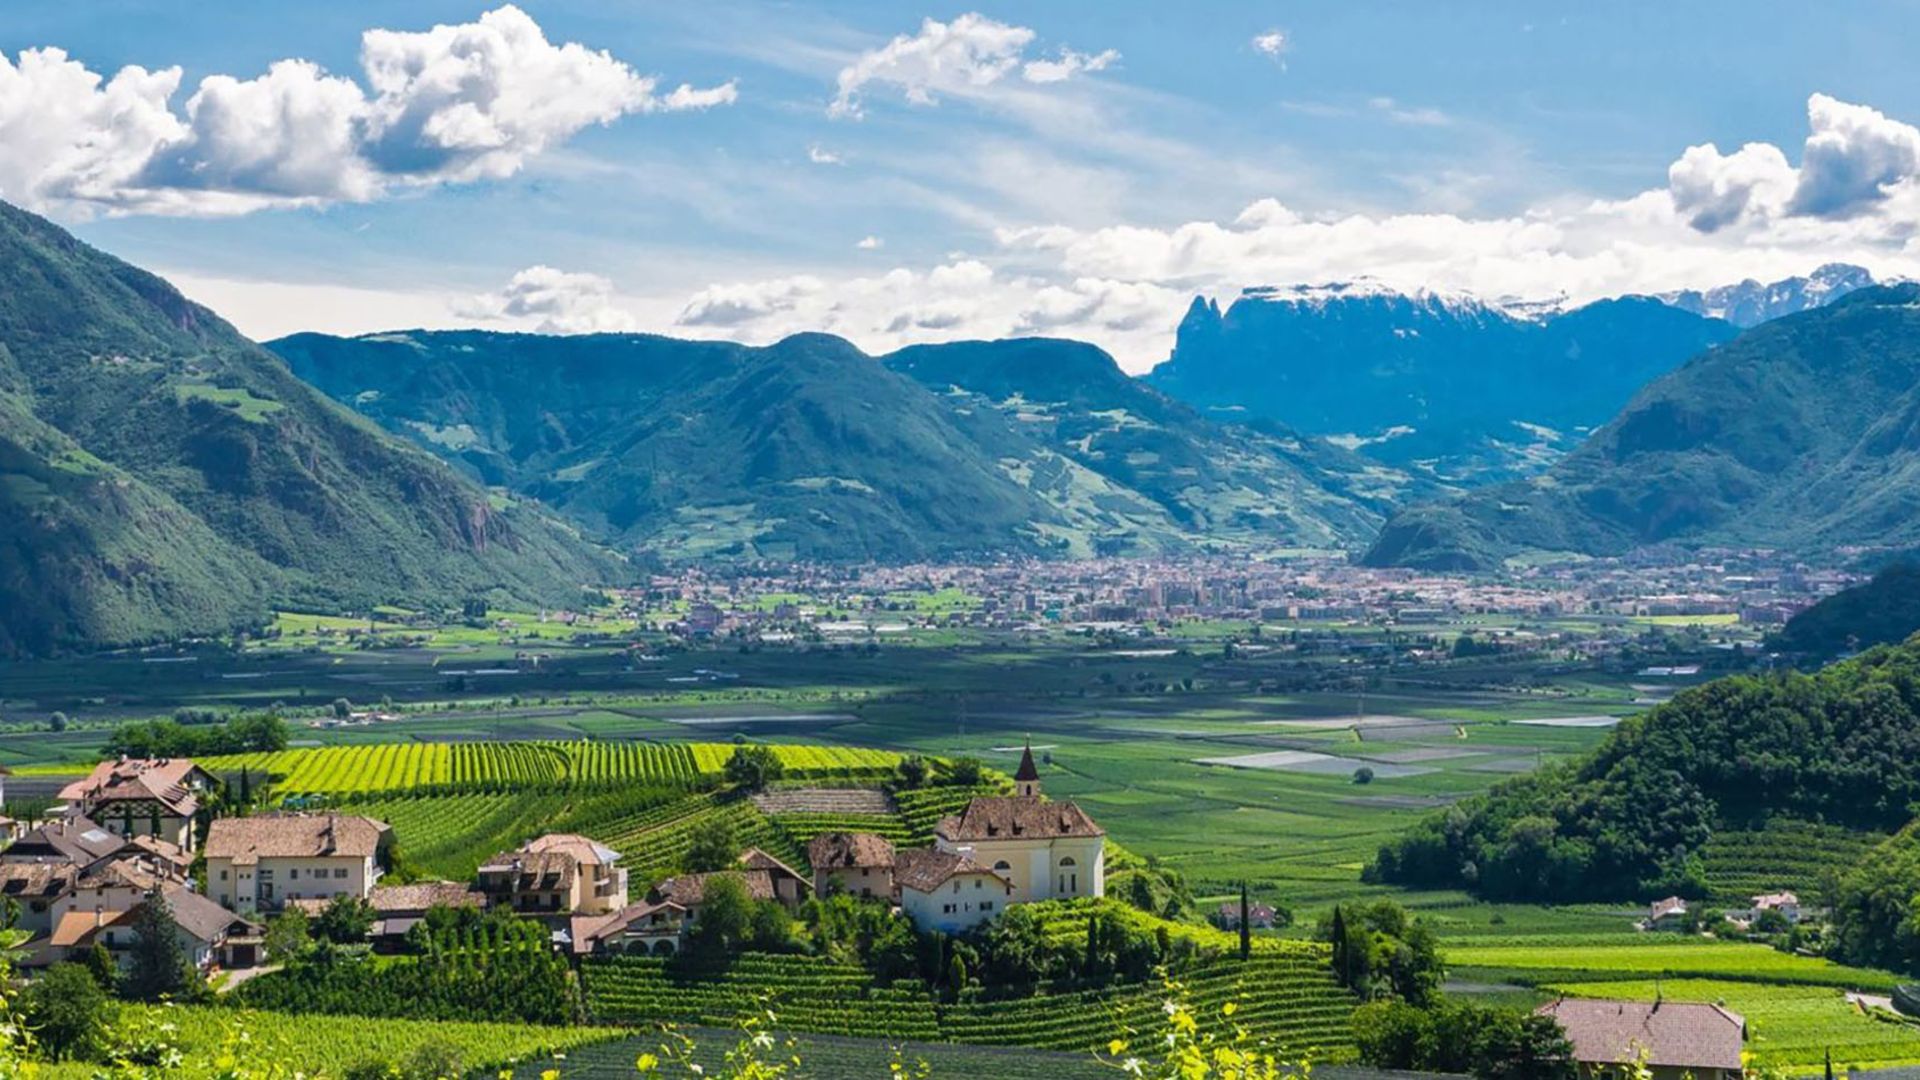 Appartamenti vacanza, Strada del Vino, Alto Adige, vista panoramica